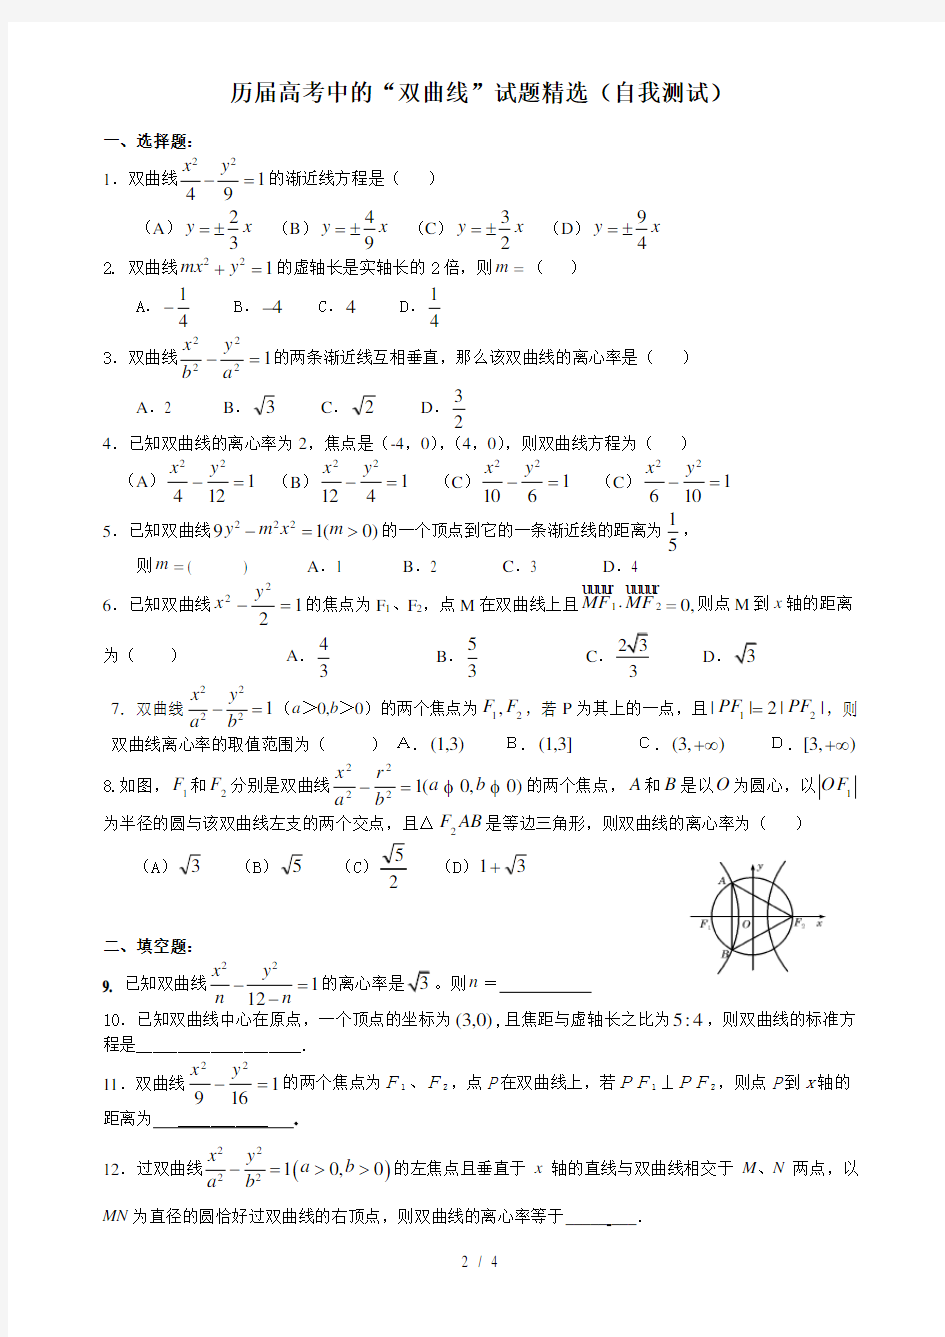 《圆锥曲线》精选历届高考试题(文科)